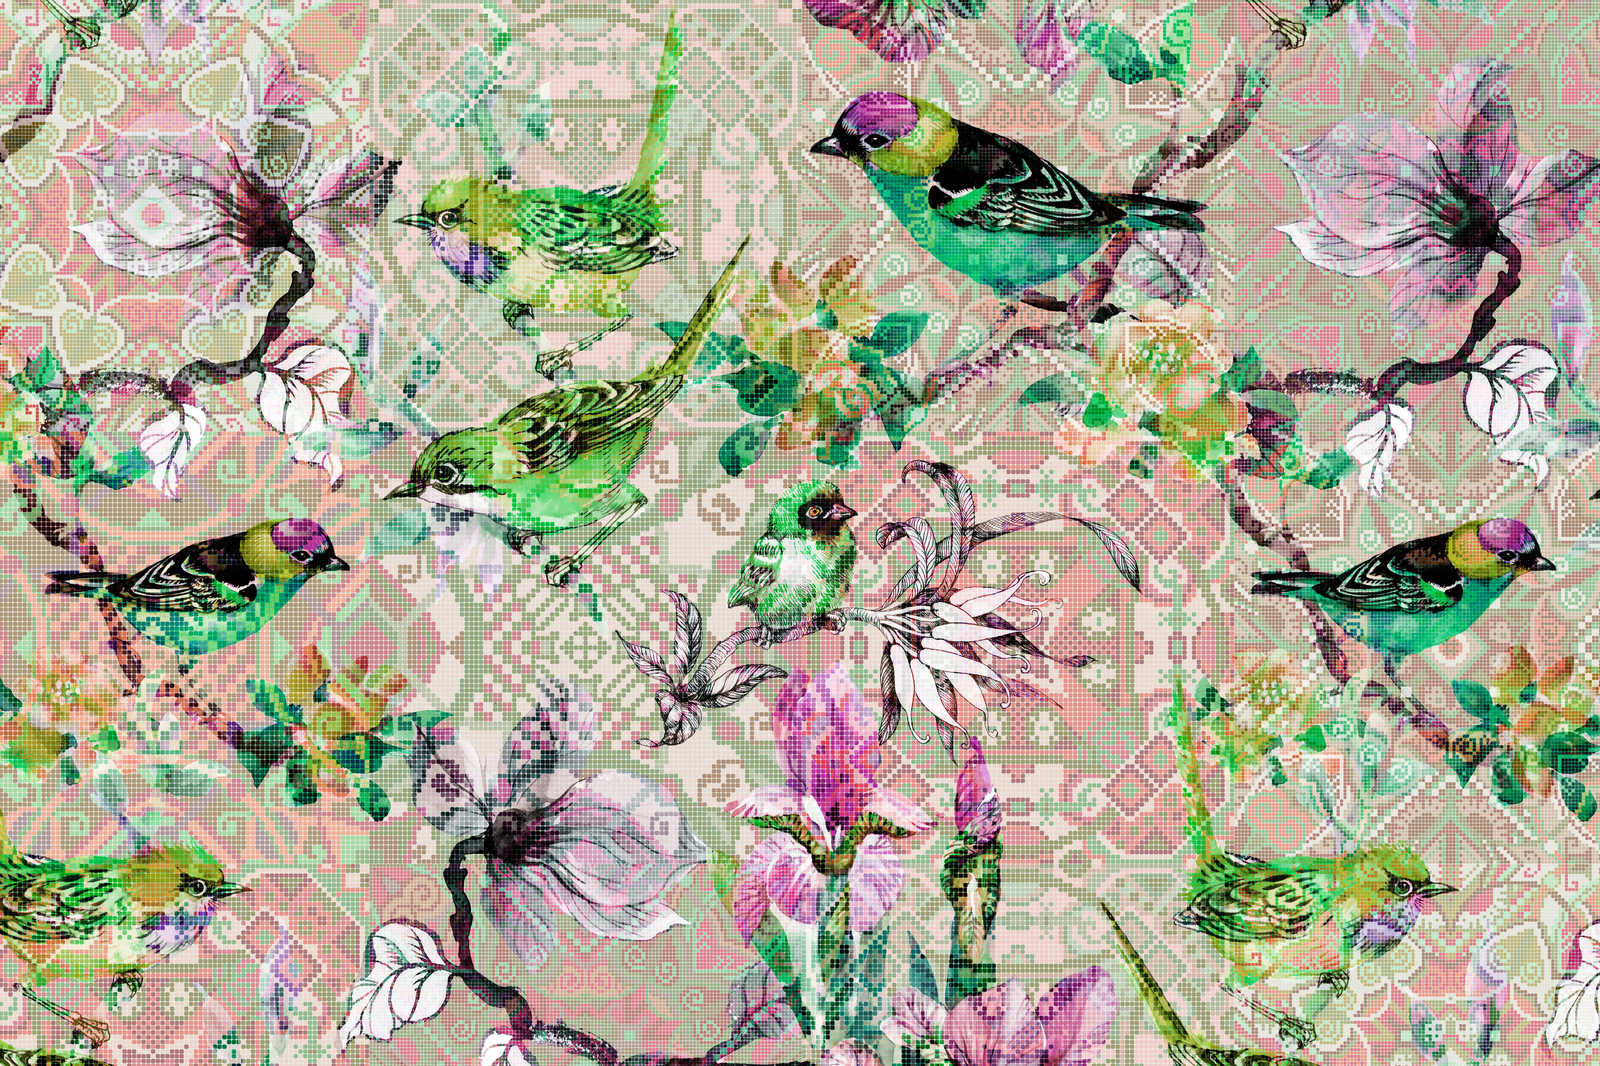             Oiseau toile avec motif mosaïque | mosaic birds 2 - 0,90 m x 0,60 m
        